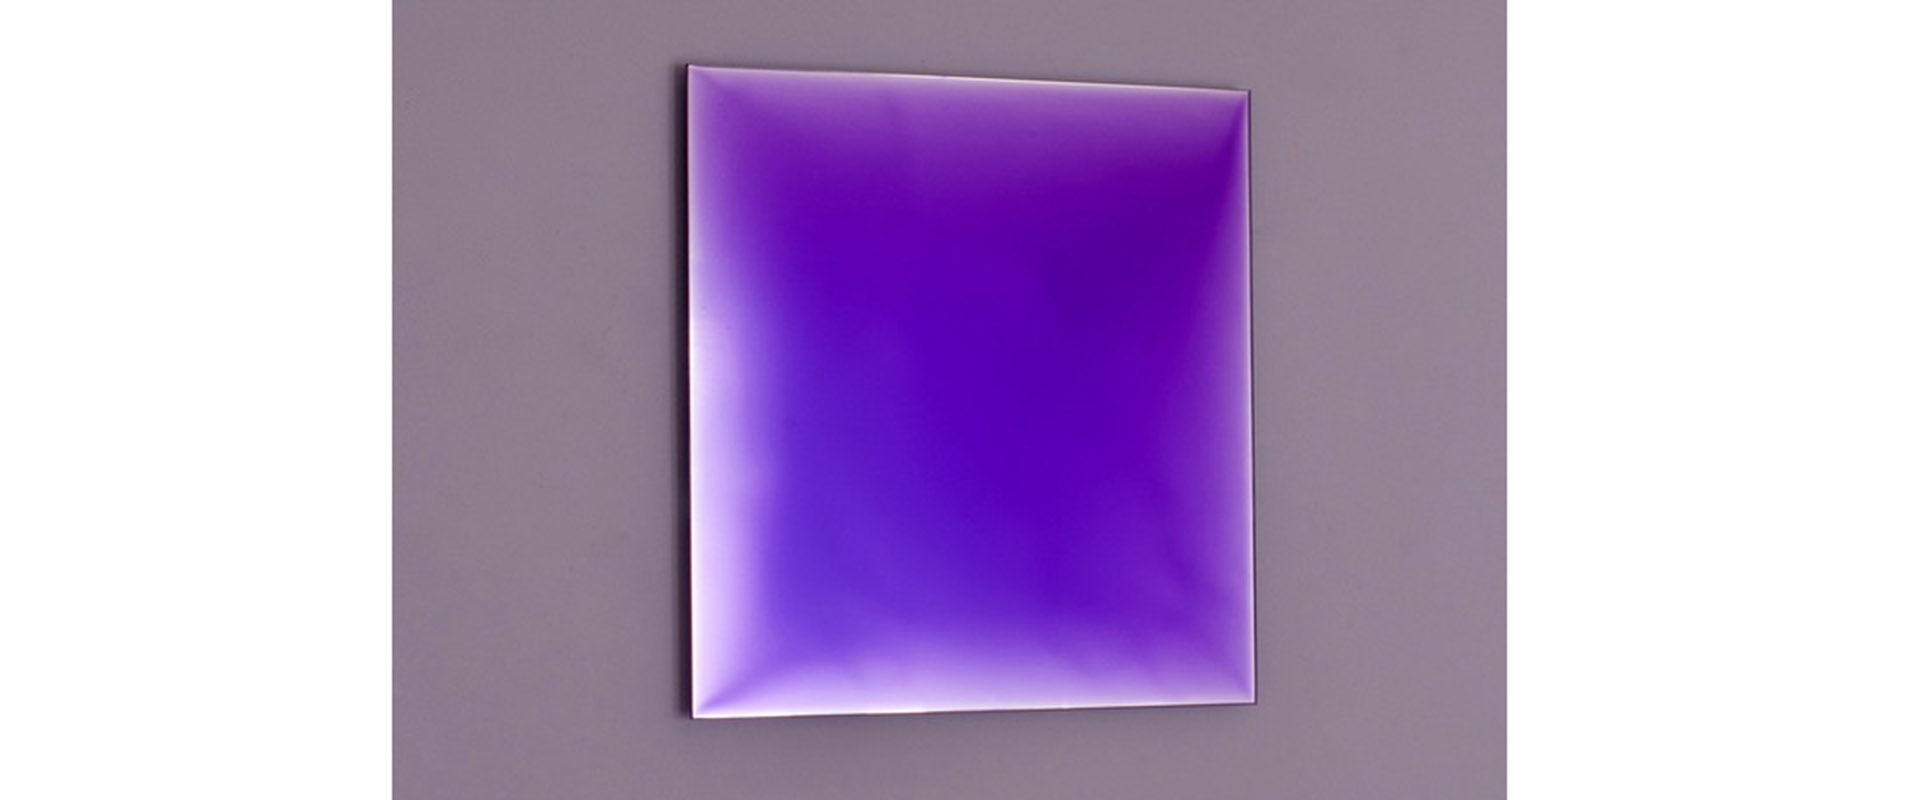 NUMEN #III-BLAU-GRÜN XIII - 2020, Pigment, Lack, auf verspiegeltem Glas, 30 x 30 cm